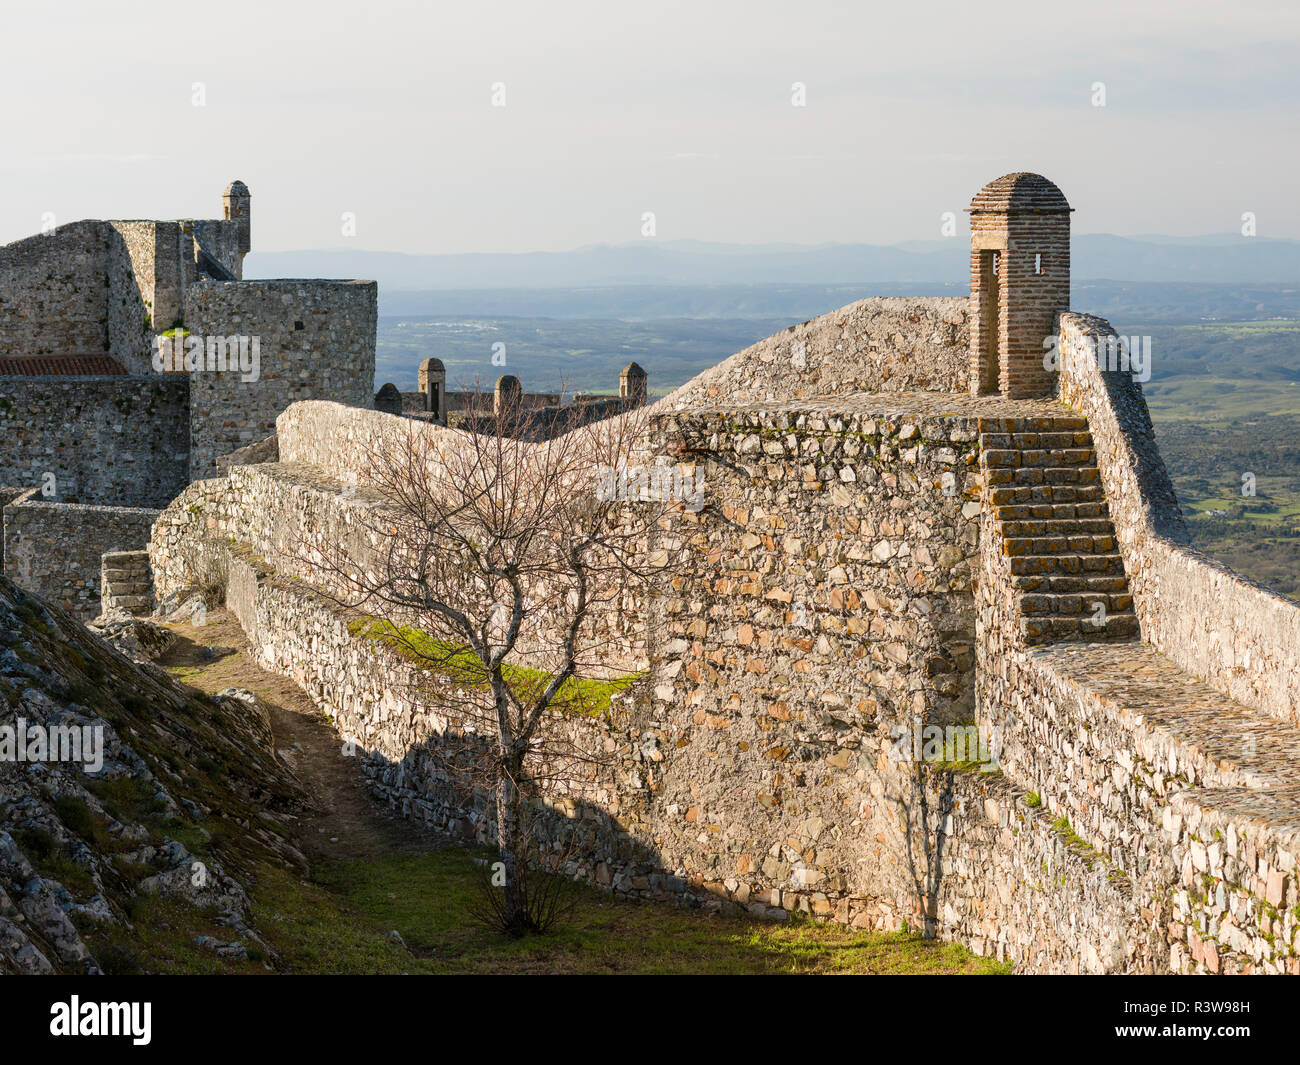 Das Schloss aus maurischen Zeiten im Mittelalter. Ohrid einen berühmten mittelalterlichen Bergdorf und touristische Attraktion im Alentejo. Portugal Stockfoto